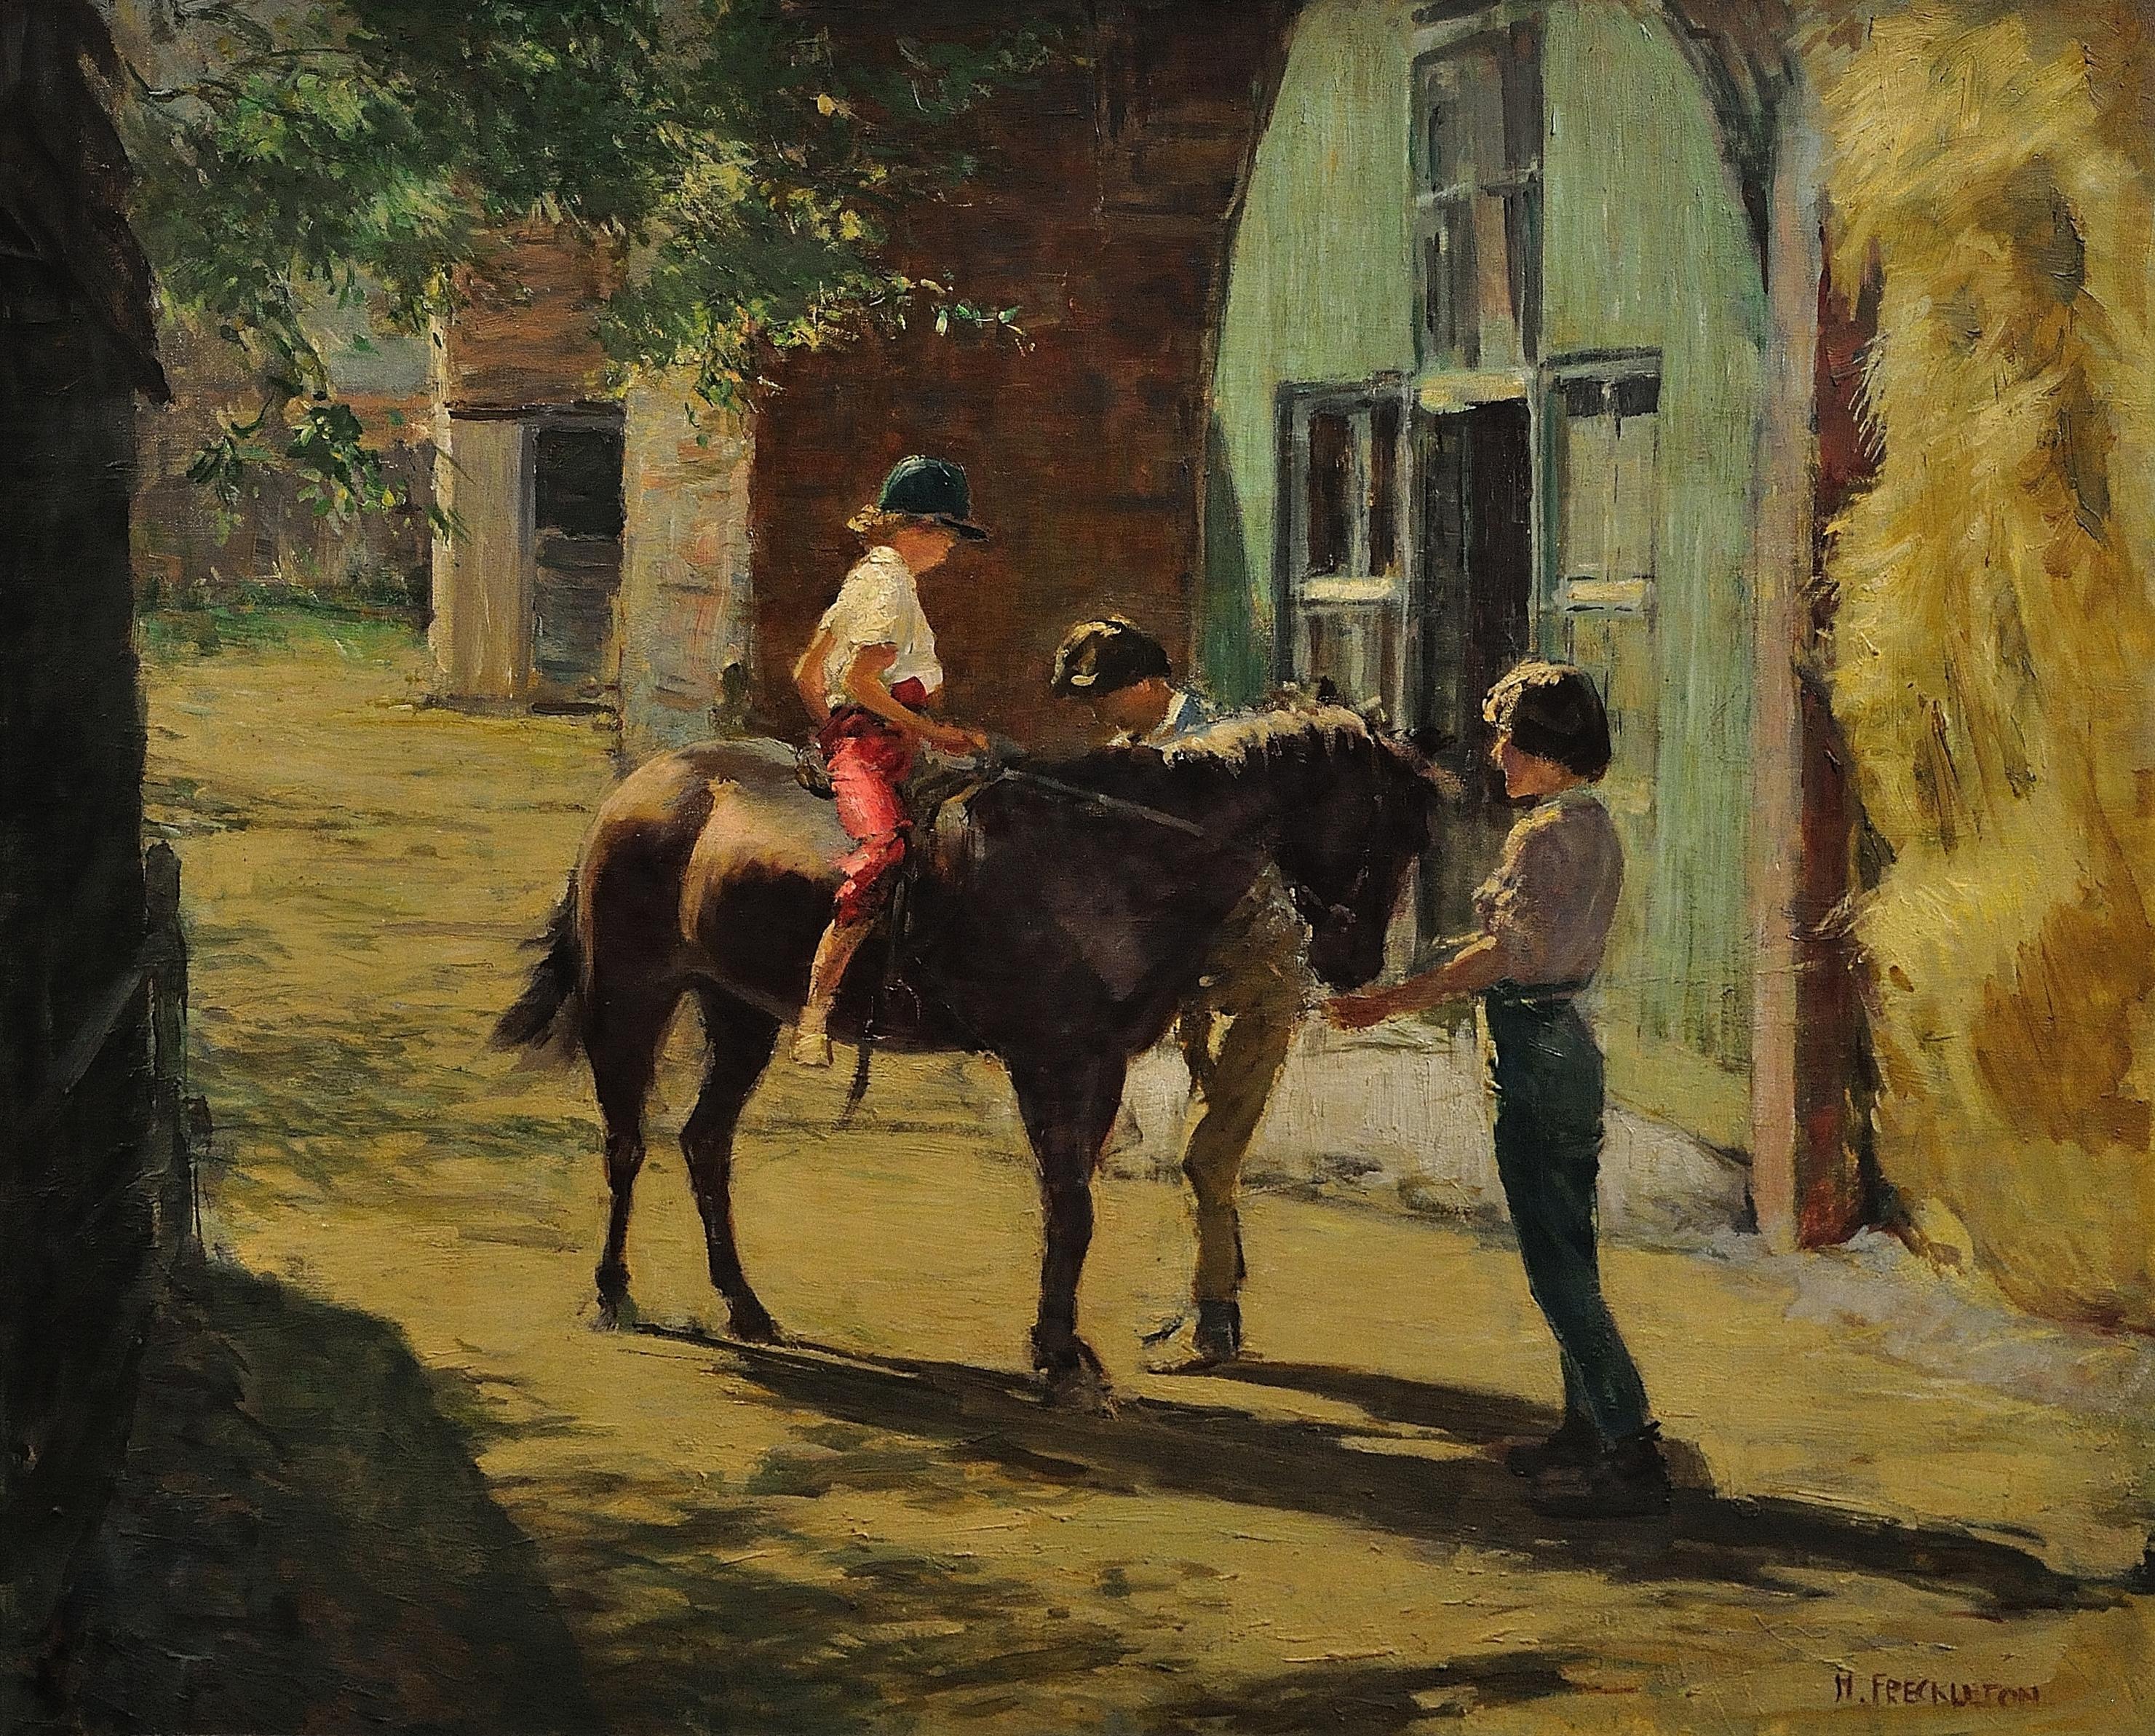 Milly mit Minstrel. Kinder mit ihrem Pony im applizierten Sommer-Sonnenlicht. – Painting von Harold Walton Freckleton